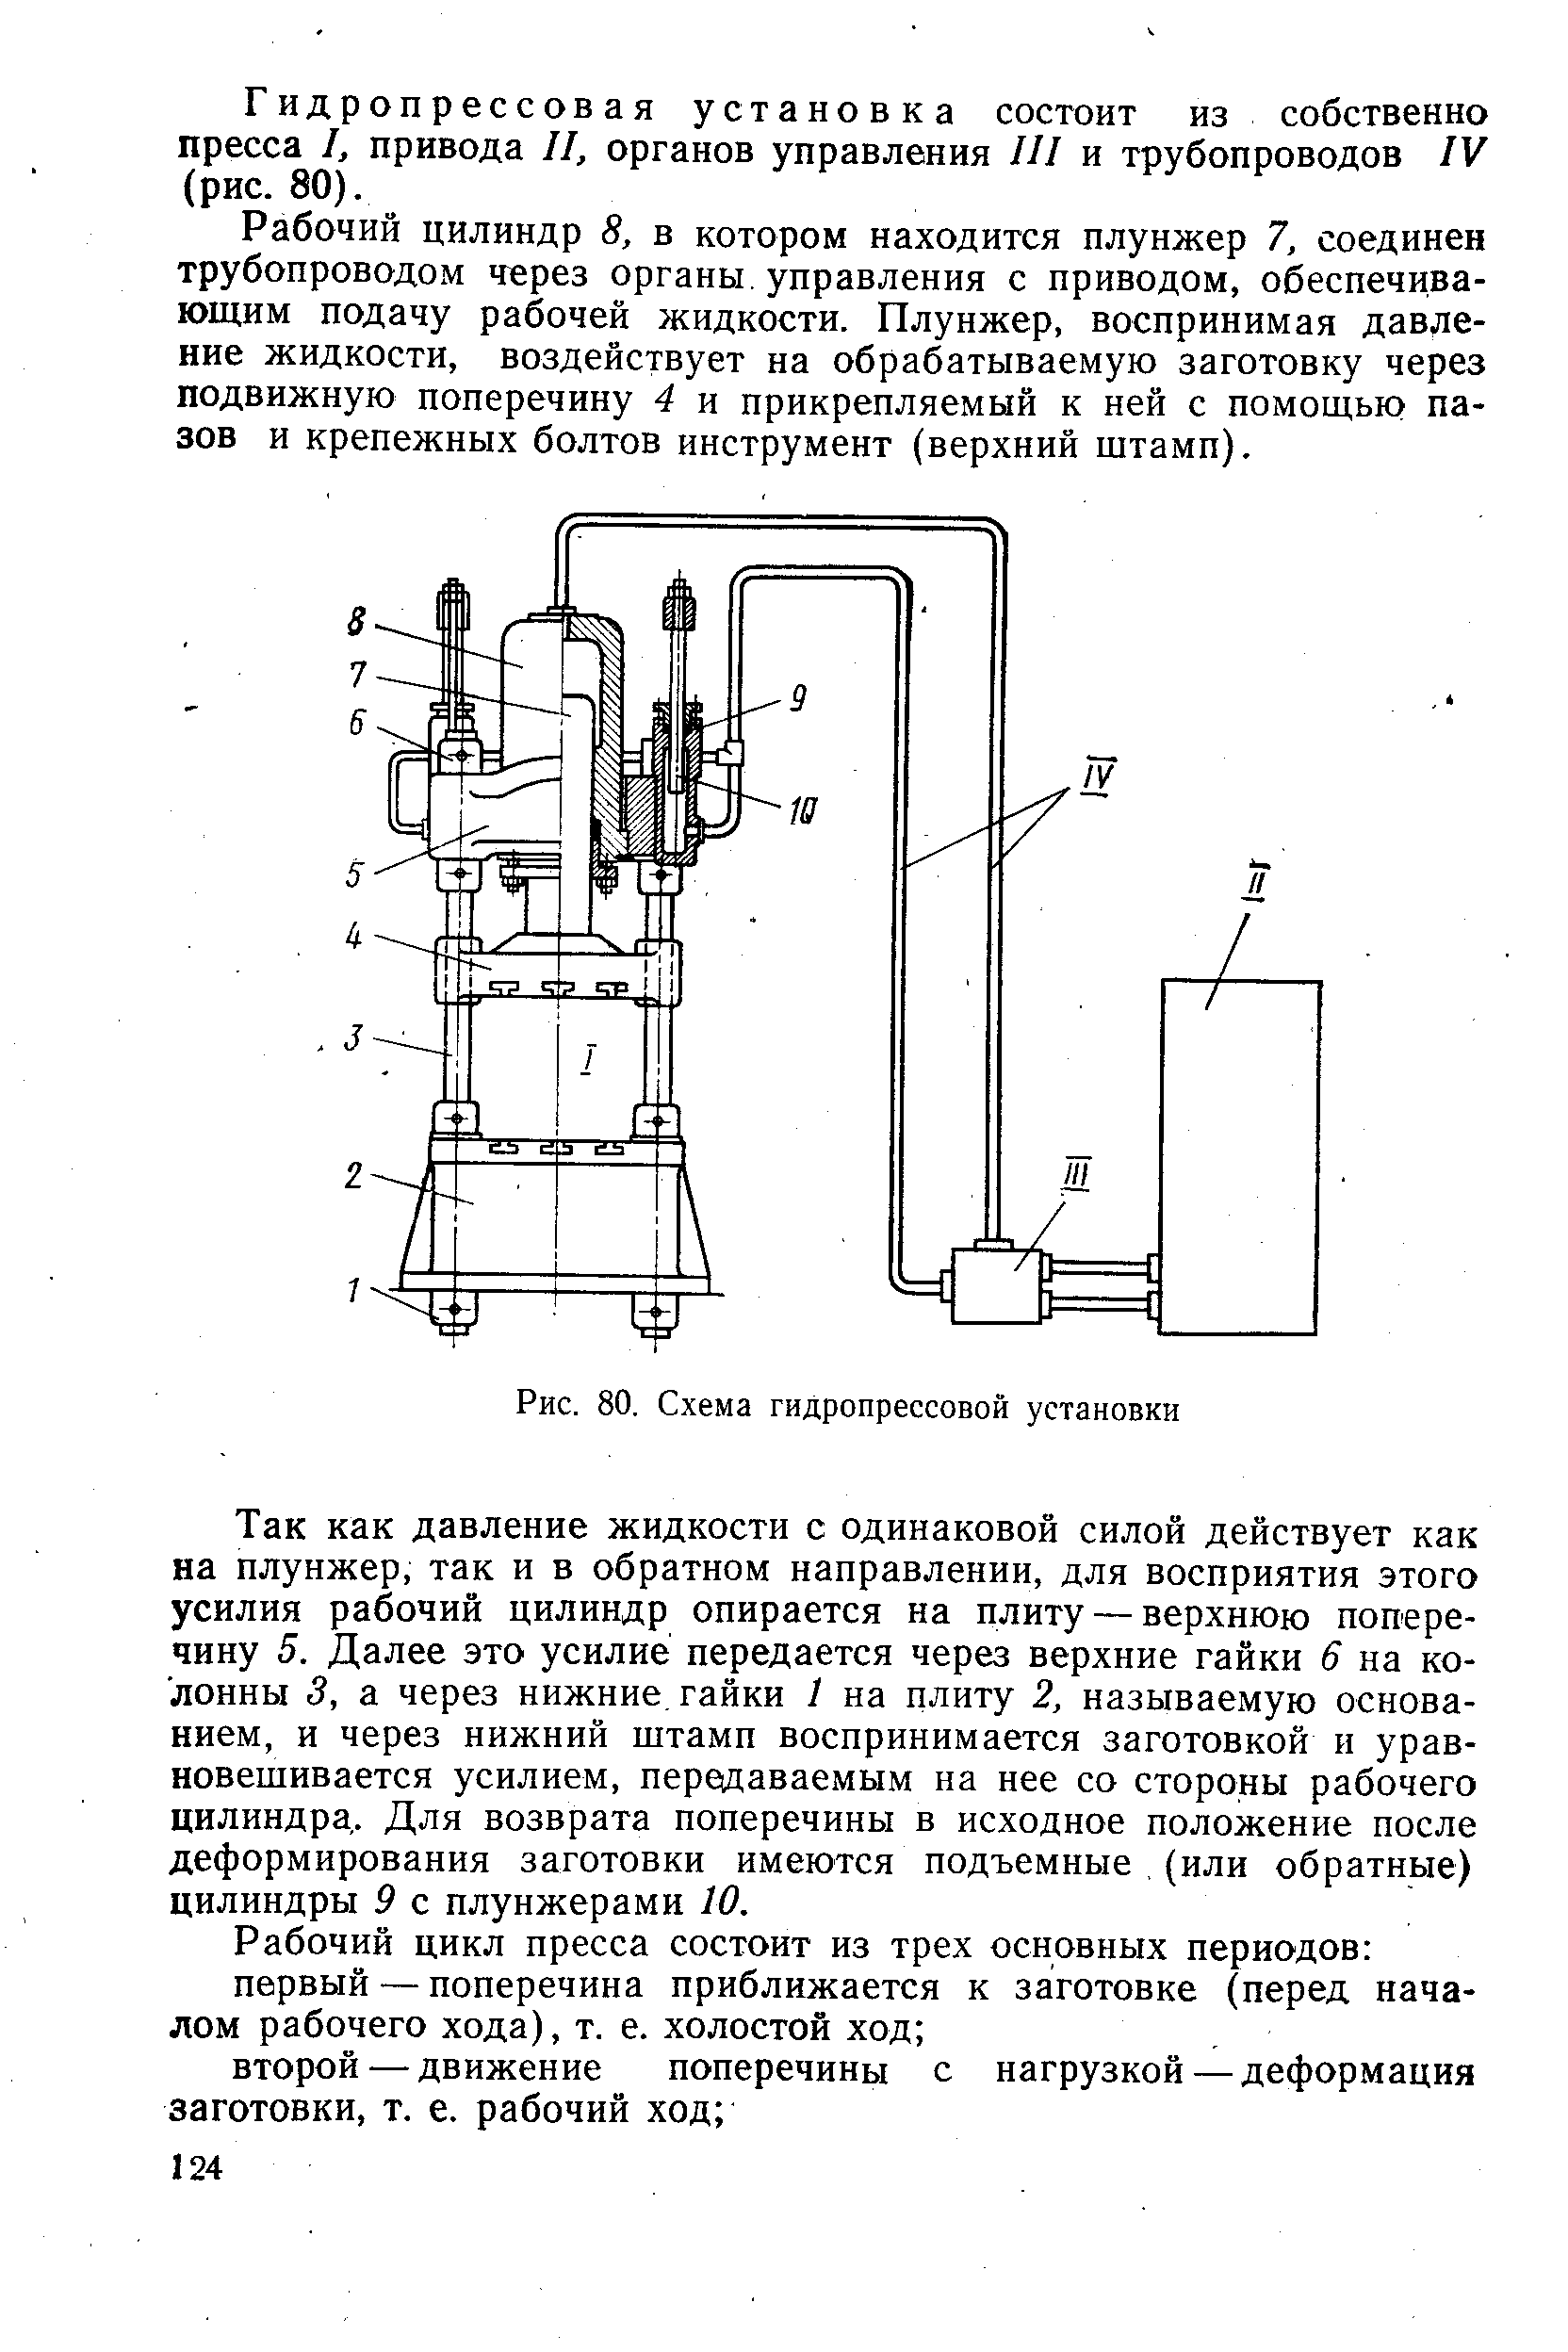 Рис. 80. Схема гидропрессовой установки
